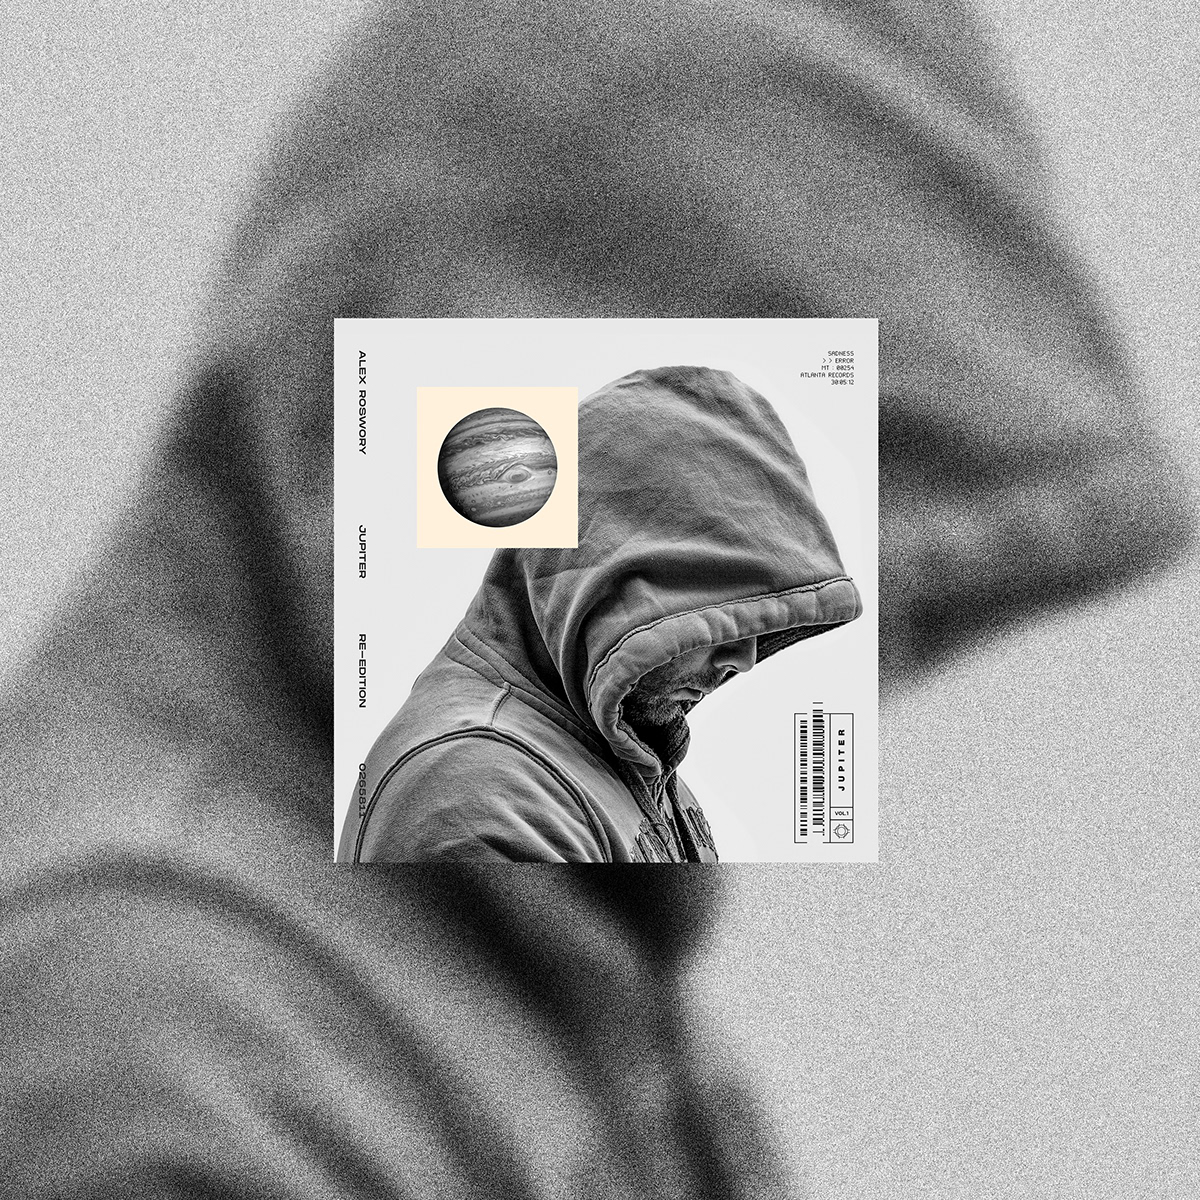 Musique cd cover Album design print music vinyl rap art